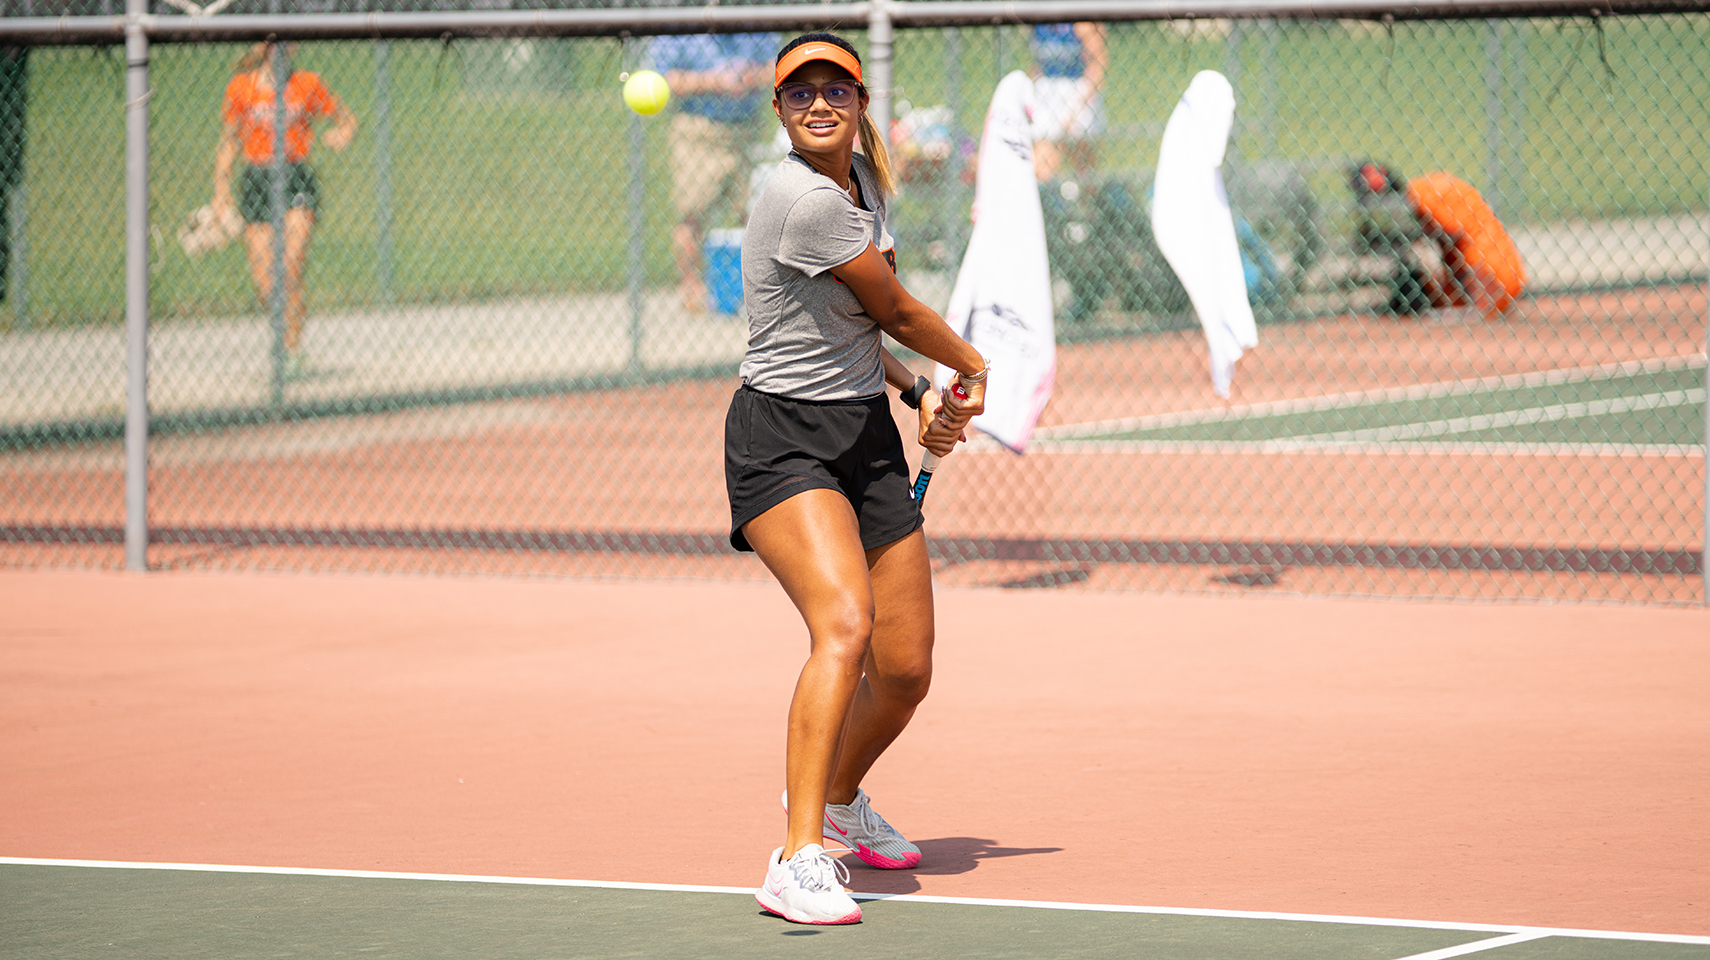 Women's tennis player returning a ball over the net